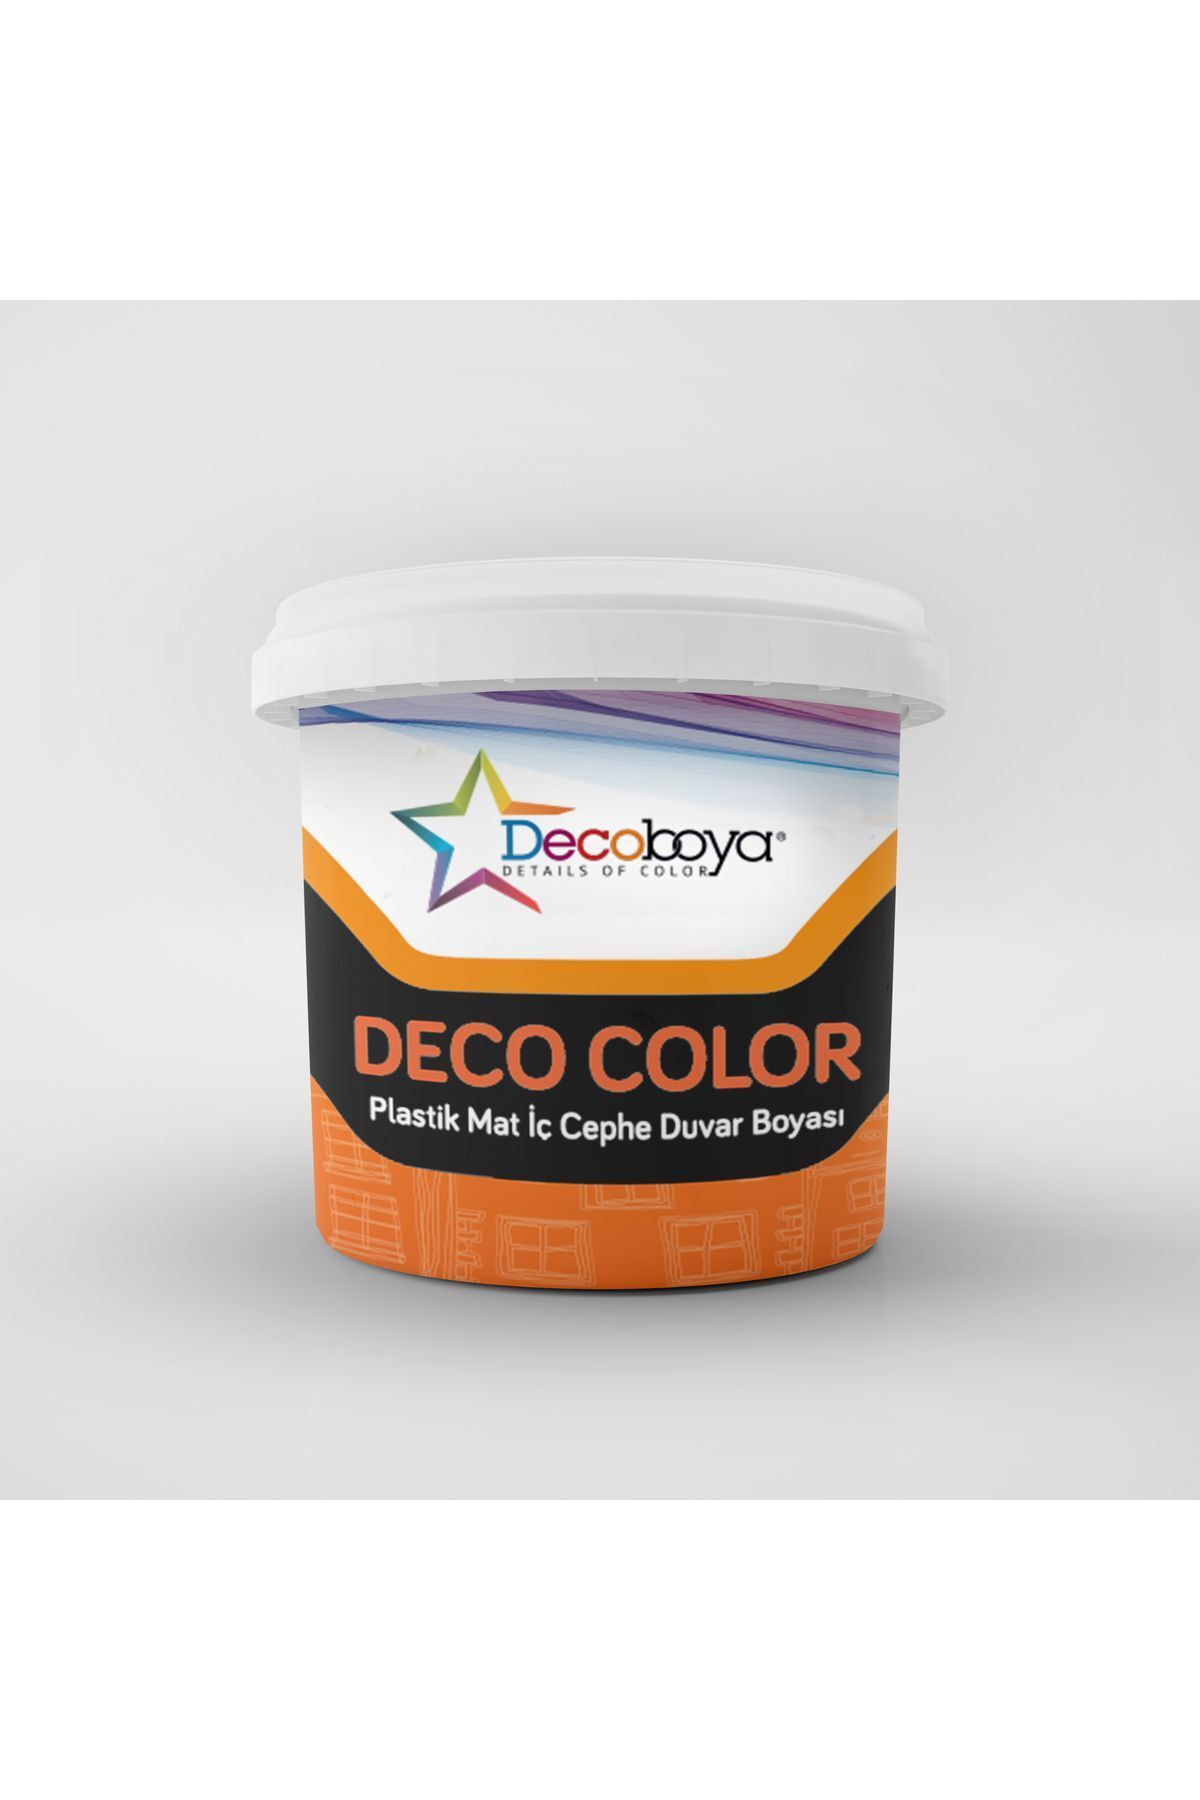 DecoBoya Deco Color Plastik Mat Iç Cephe Duvar Boyası 3 kg Tüm Renkler